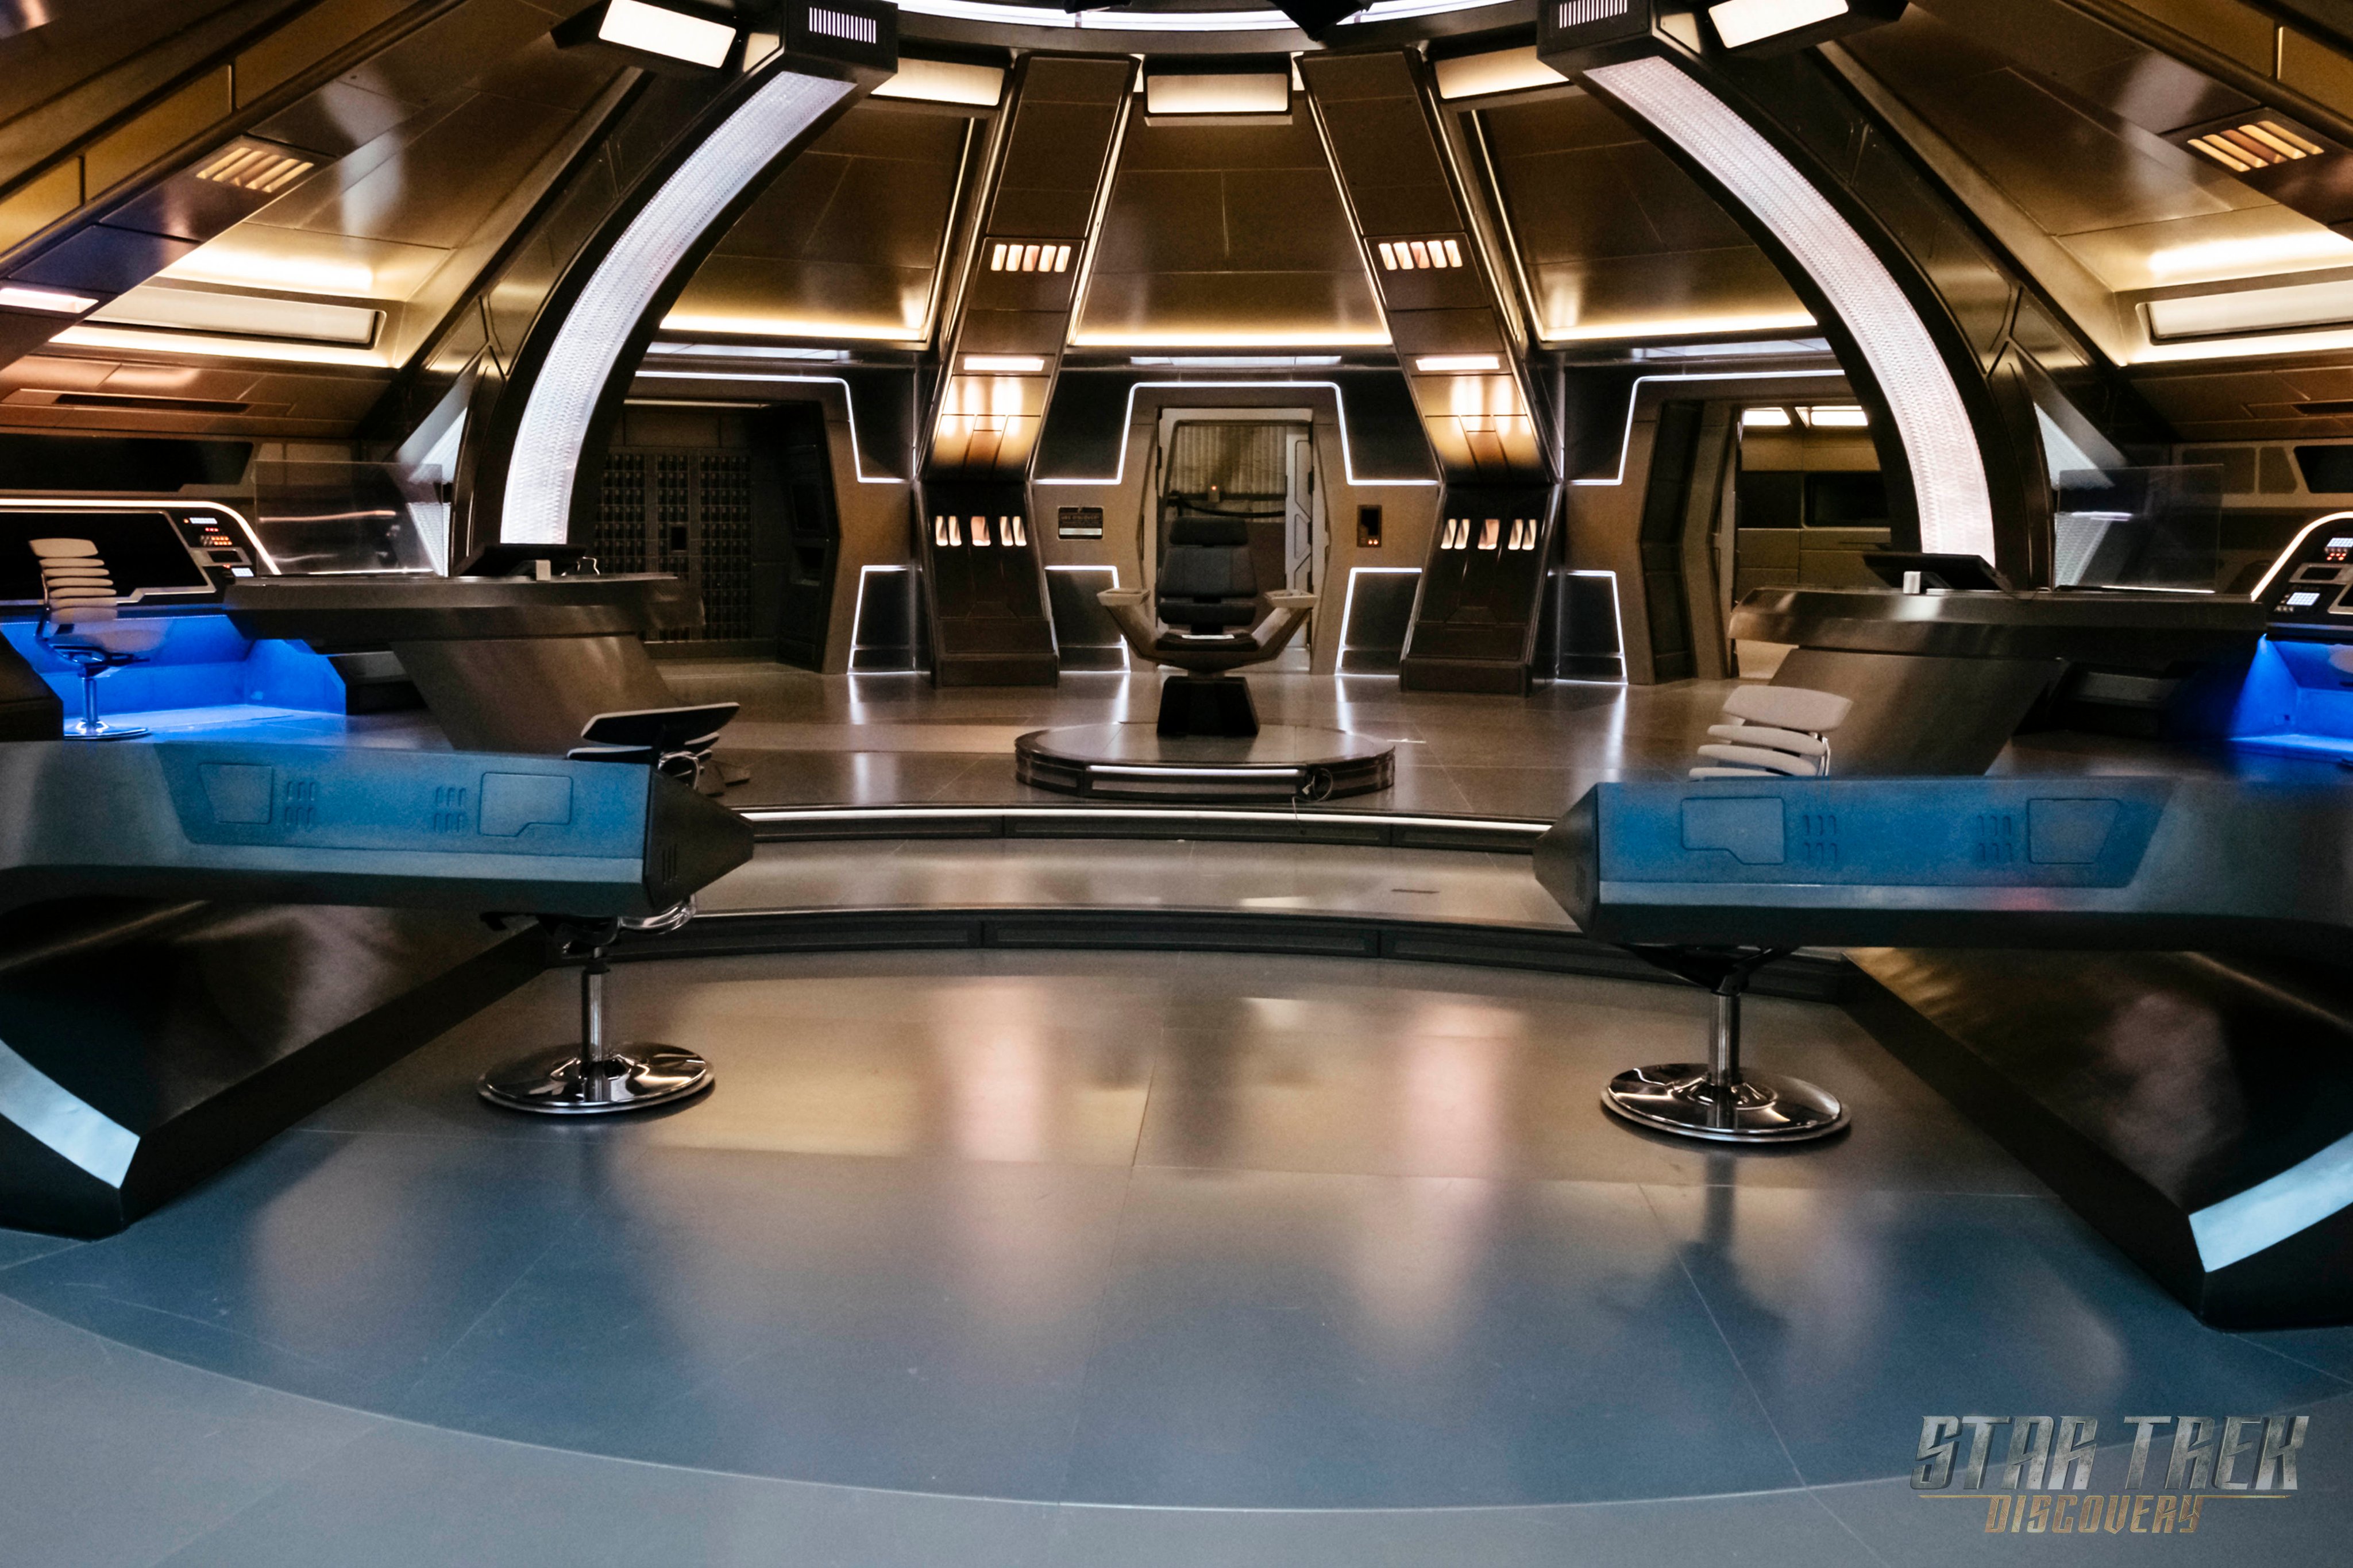 Lưu nền Star Trek cho lần tiếp theo của bạn để được trải nghiệm cảm giác bay lượn trong không gian tuyệt vời. Chúng tôi mang đến hình ảnh hoàn hảo cho các fan hâm mộ thế giới sci-fi. Hãy khám phá ngay hình ảnh liên quan đến từ khóa này và choáng ngợp trước màn hình.